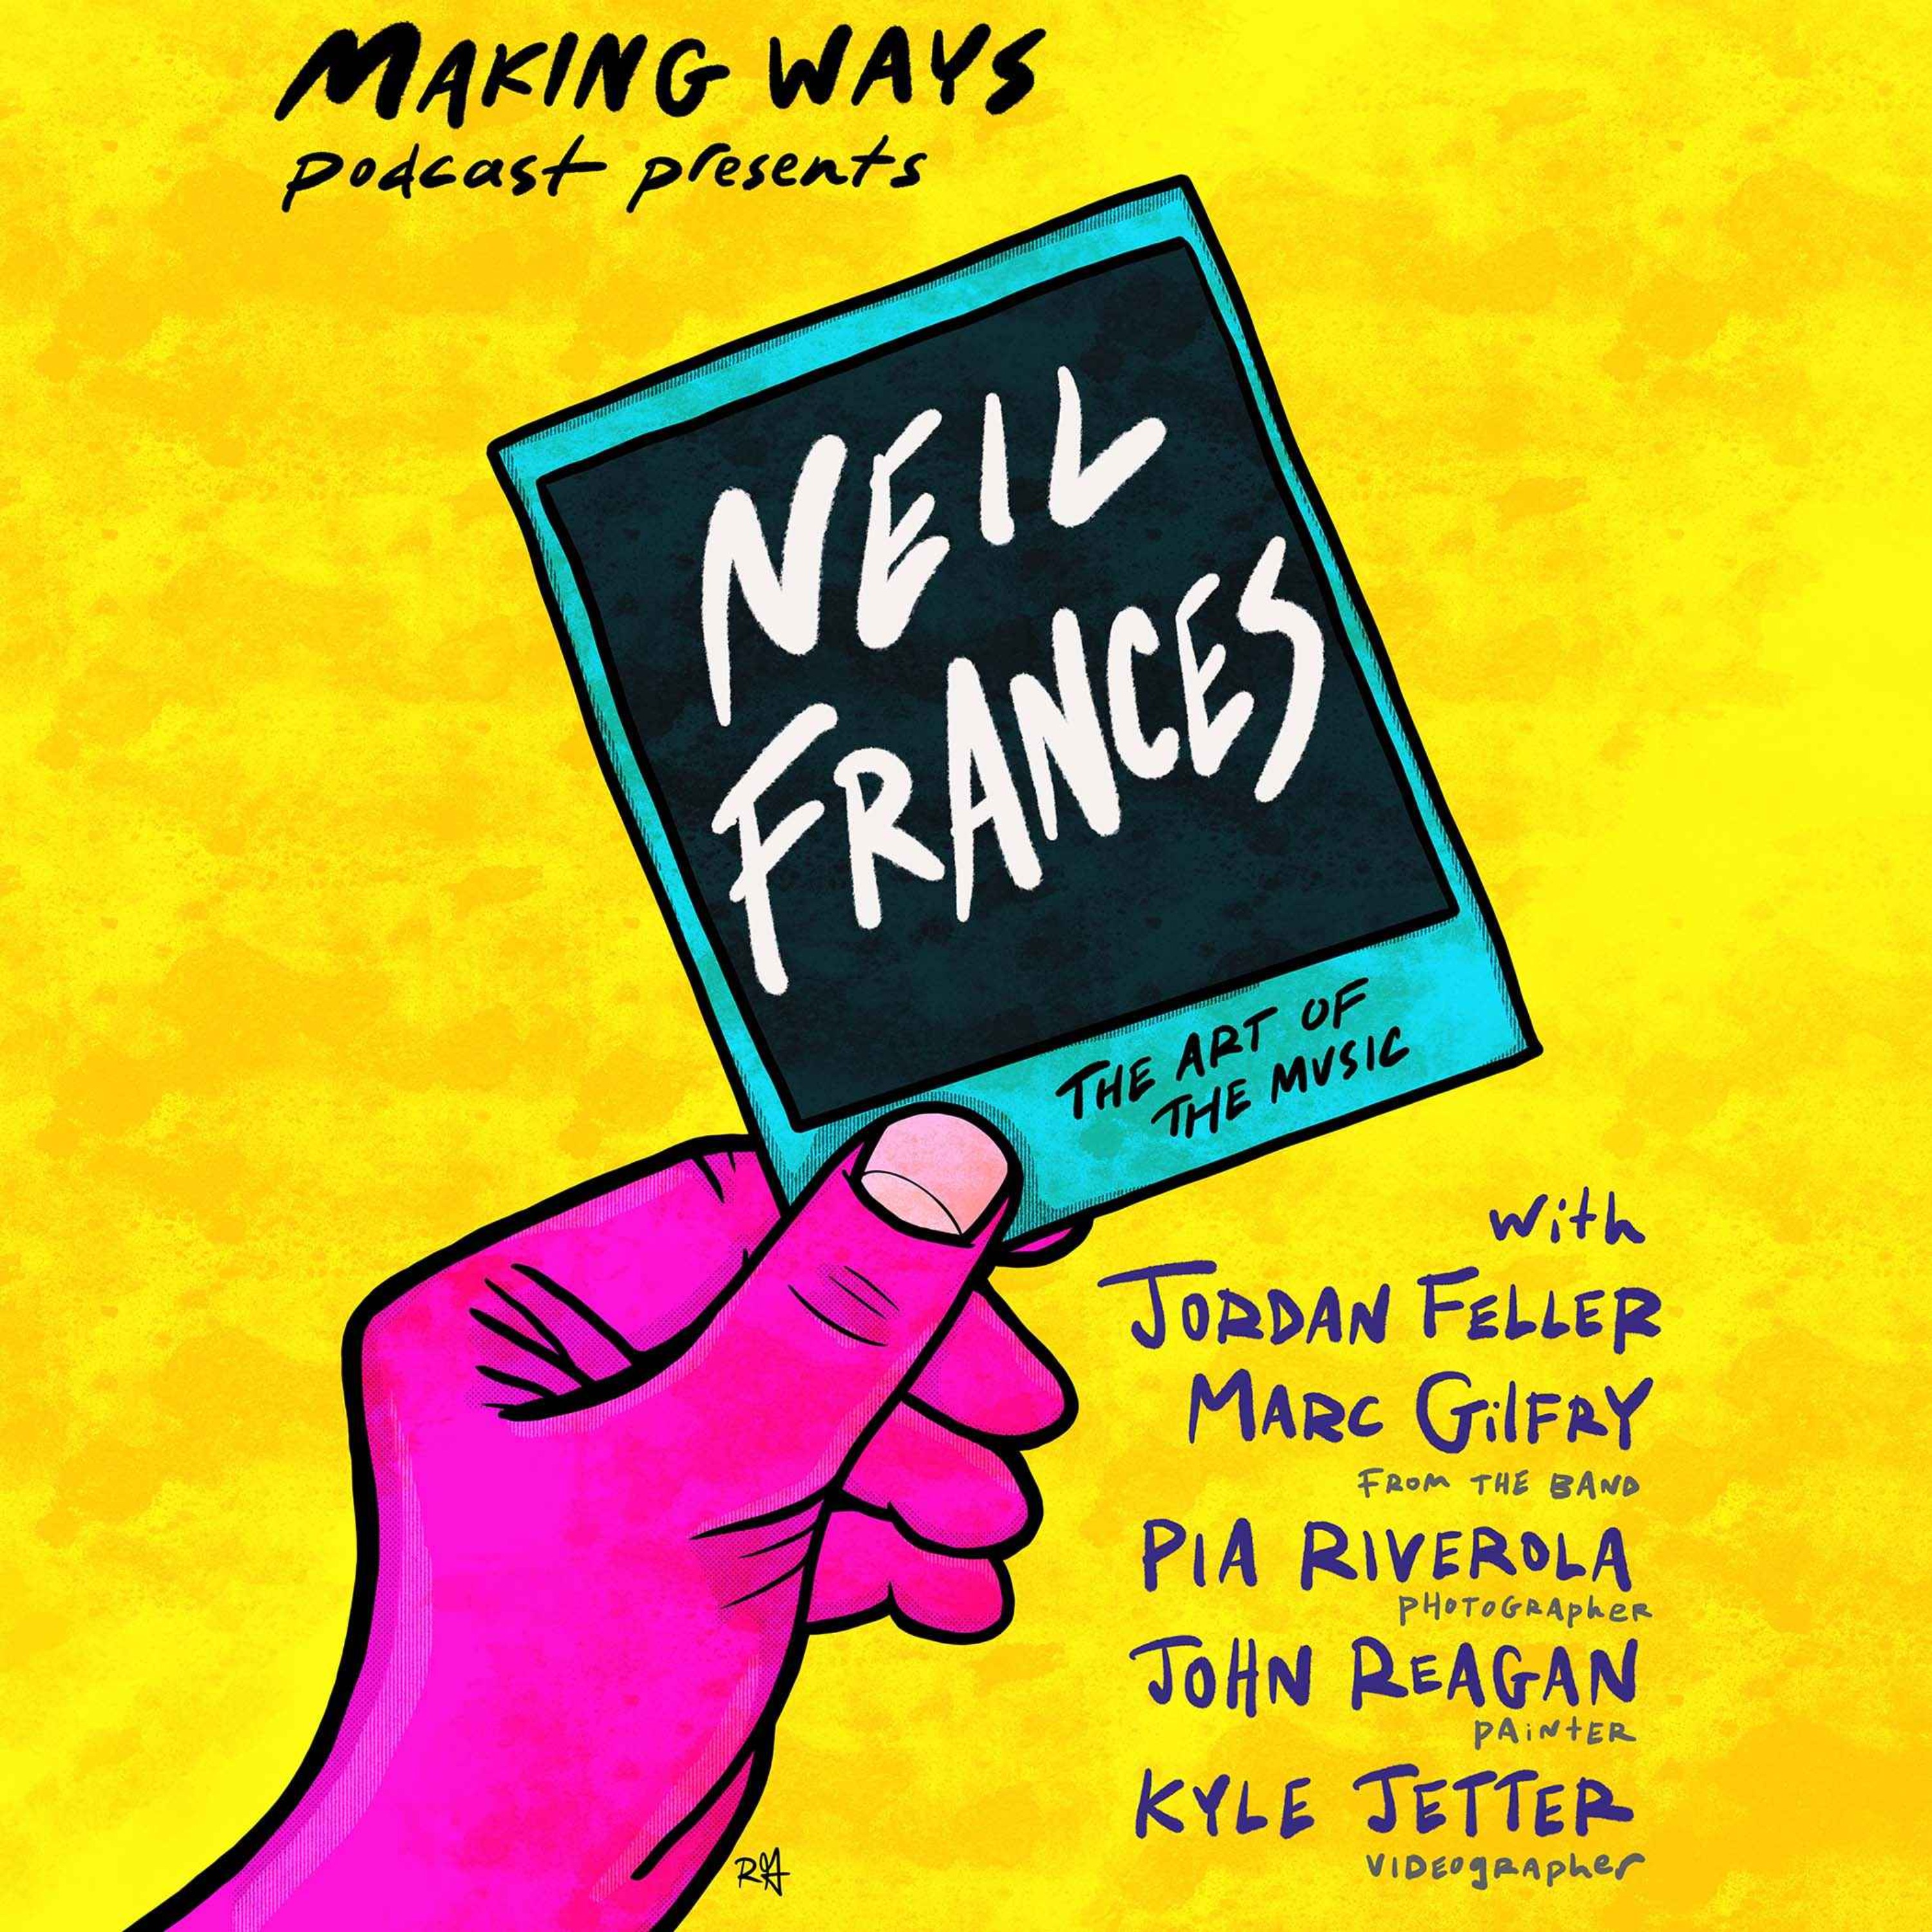 The Art of Neil Frances: Jordan Feller, Marc Gilfry, and Their Creative Family